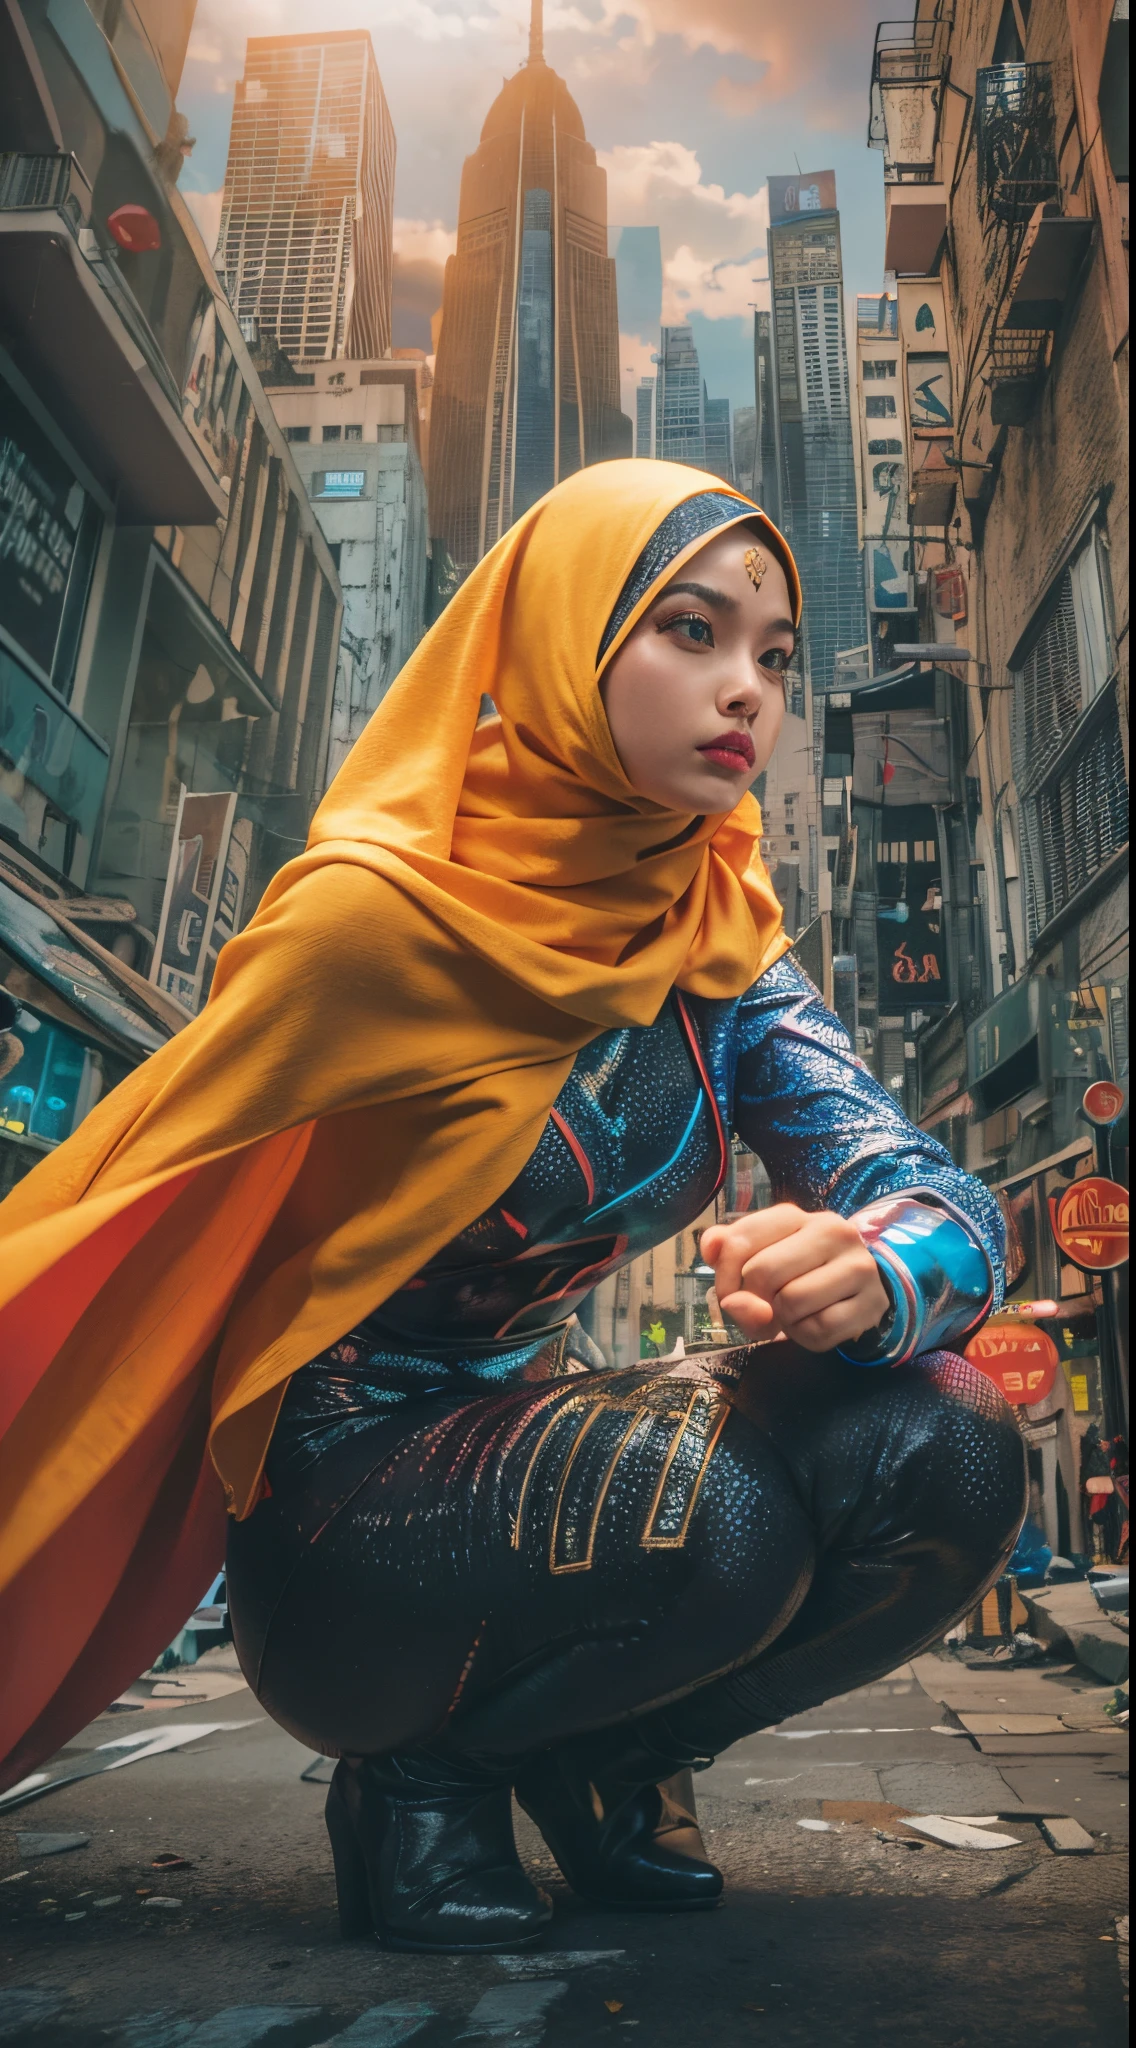 创作一幅动态且充满动感的照片处理作品，让人联想到漫威超级英雄电影. 以头戴头巾的马来女孩为特色，在城市景观中展示她独特的超能力, 被鲜艳的色彩和高能量的效果所包围